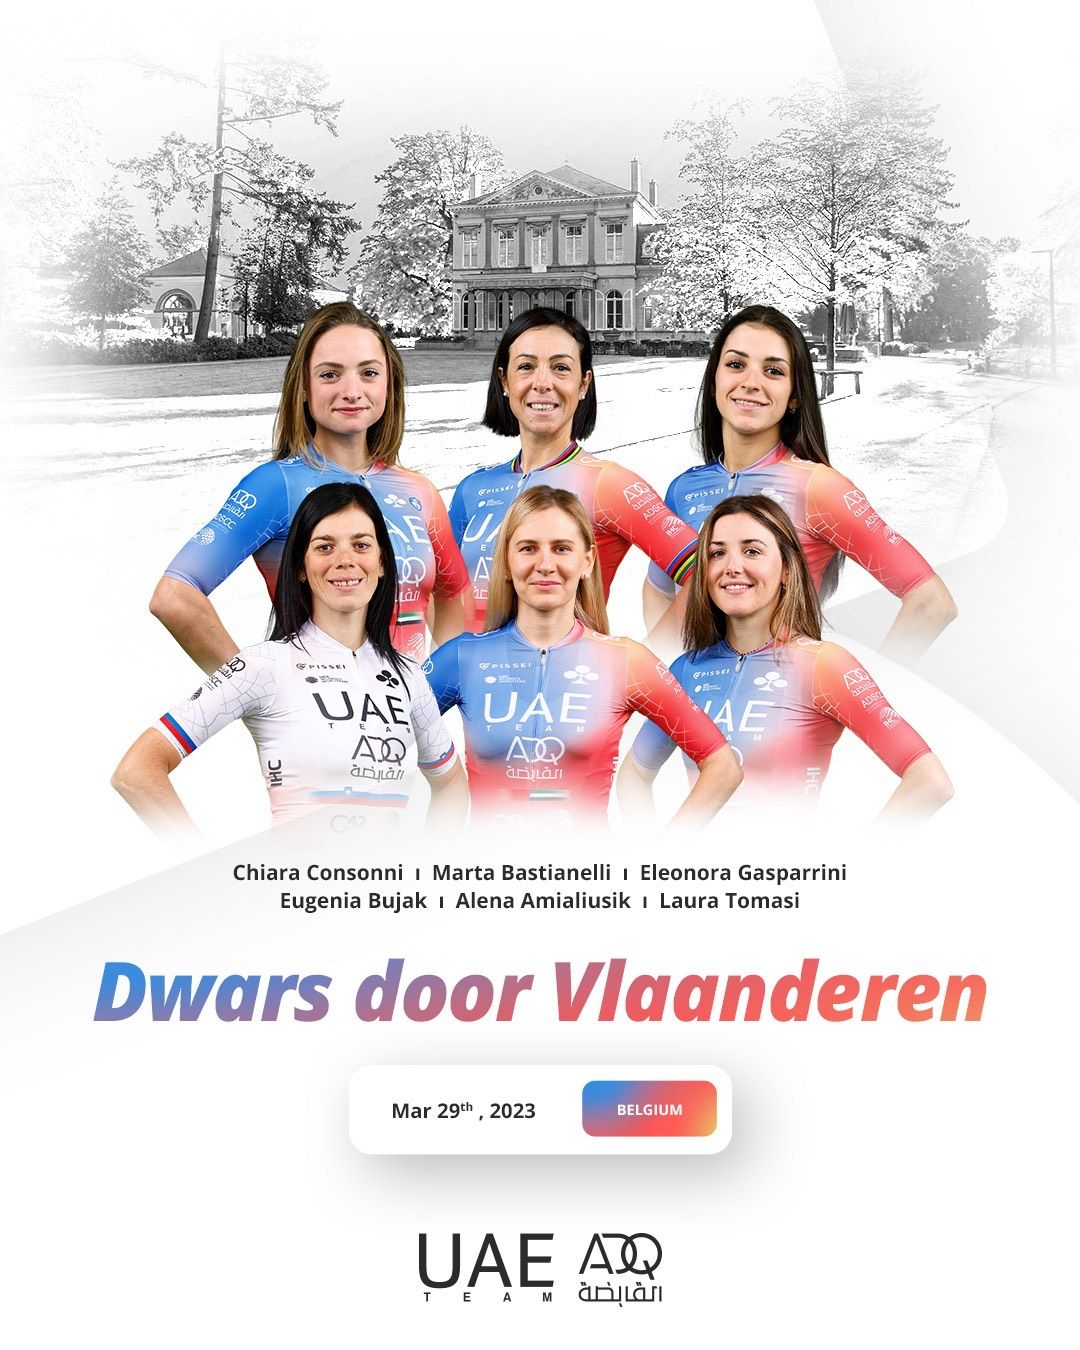 Team for Dwars door Vlaanderen and Flanders